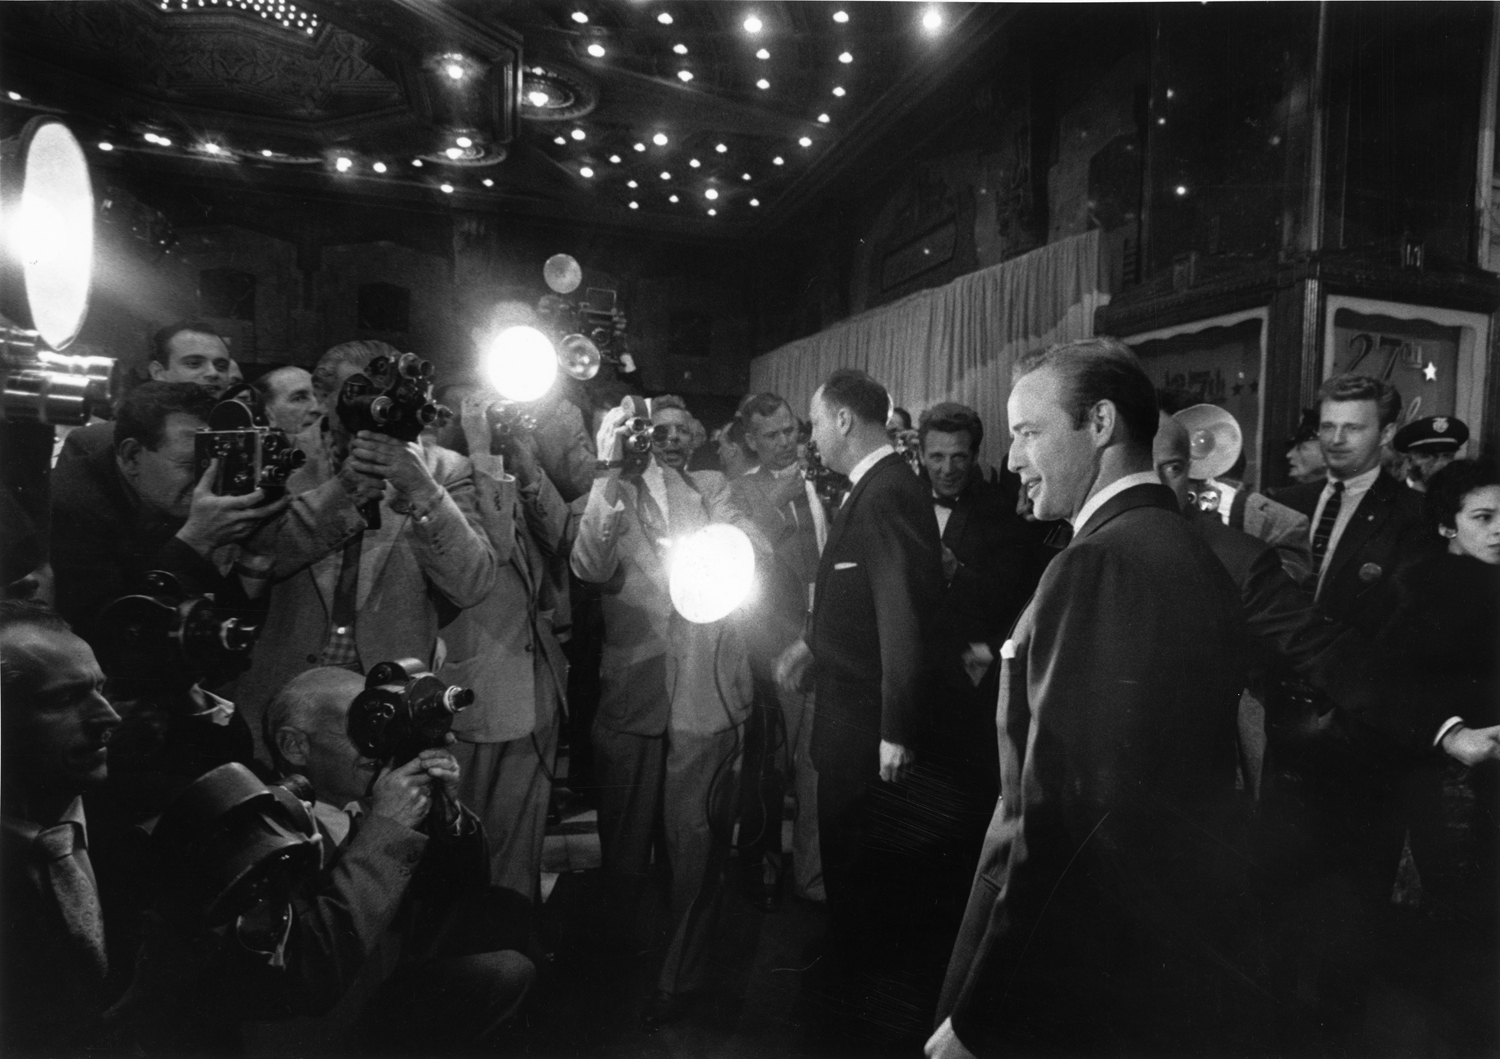 Marlon Brando at the Academy Awards, 1955.